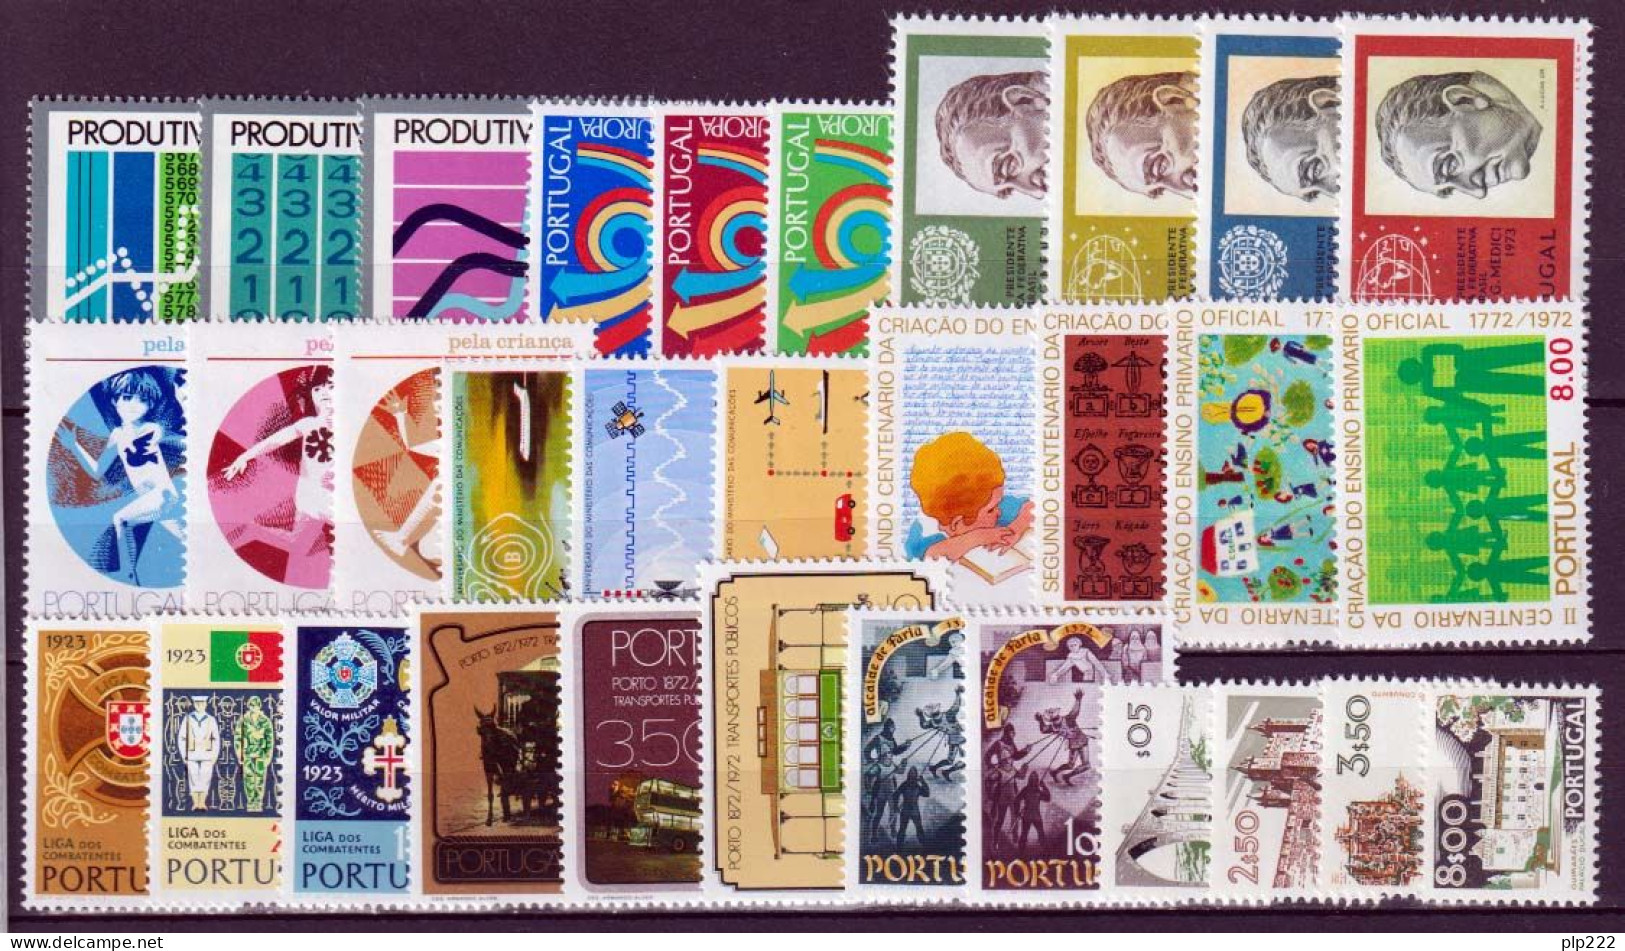 Portogallo 1973 Annata Completa / Complete Year Set **/MNH VF - Annate Complete